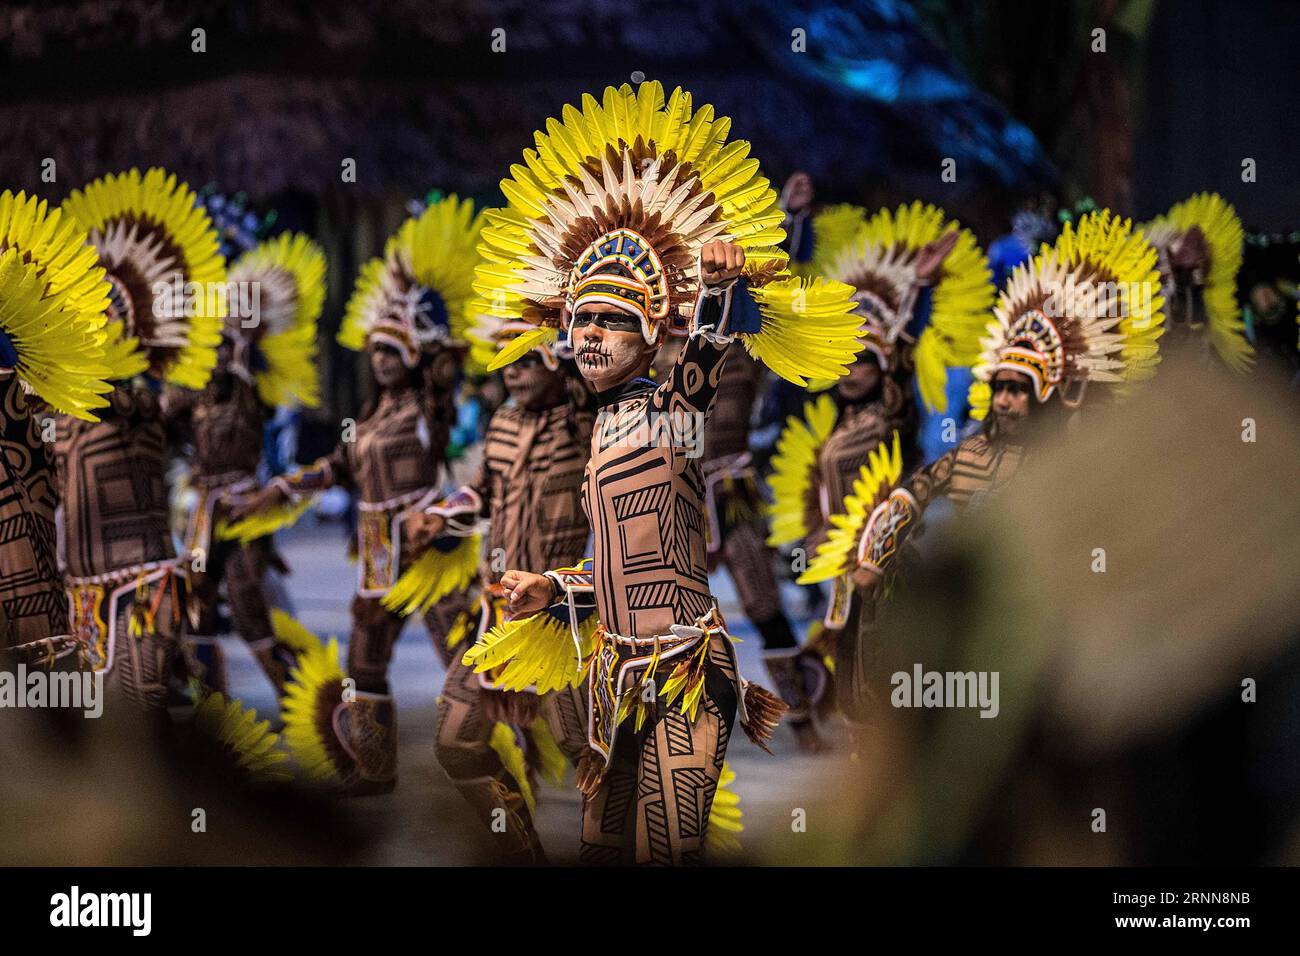 (170701) -- PARINTINS, 1 juillet 2017 -- les acteurs de l'équipe Caprichoso se produisent lors du Festival folklorique Parintins à Parintins, dans l'État d'Amazonas, Brésil, le 1 juillet 2017. Parintins folklore Festival, une célébration annuelle populaire tenue dans la ville brésilienne de Parintins, Amazonas, a débuté vendredi soir. (Jmmn) BRÉSIL-PARINTINS-FESTIVAL LixMing PUBLICATIONxNOTxINxCHN Parintins juillet 1 2017 les acteurs de l'équipe Caprichoso jouent pendant le Festival folklorique Parintins à Parintins l'État amazonien Brésil LE 1 2017 juillet Festival folklorique Parintins un héros populaire de célébration annuelle au Brésil Banque D'Images